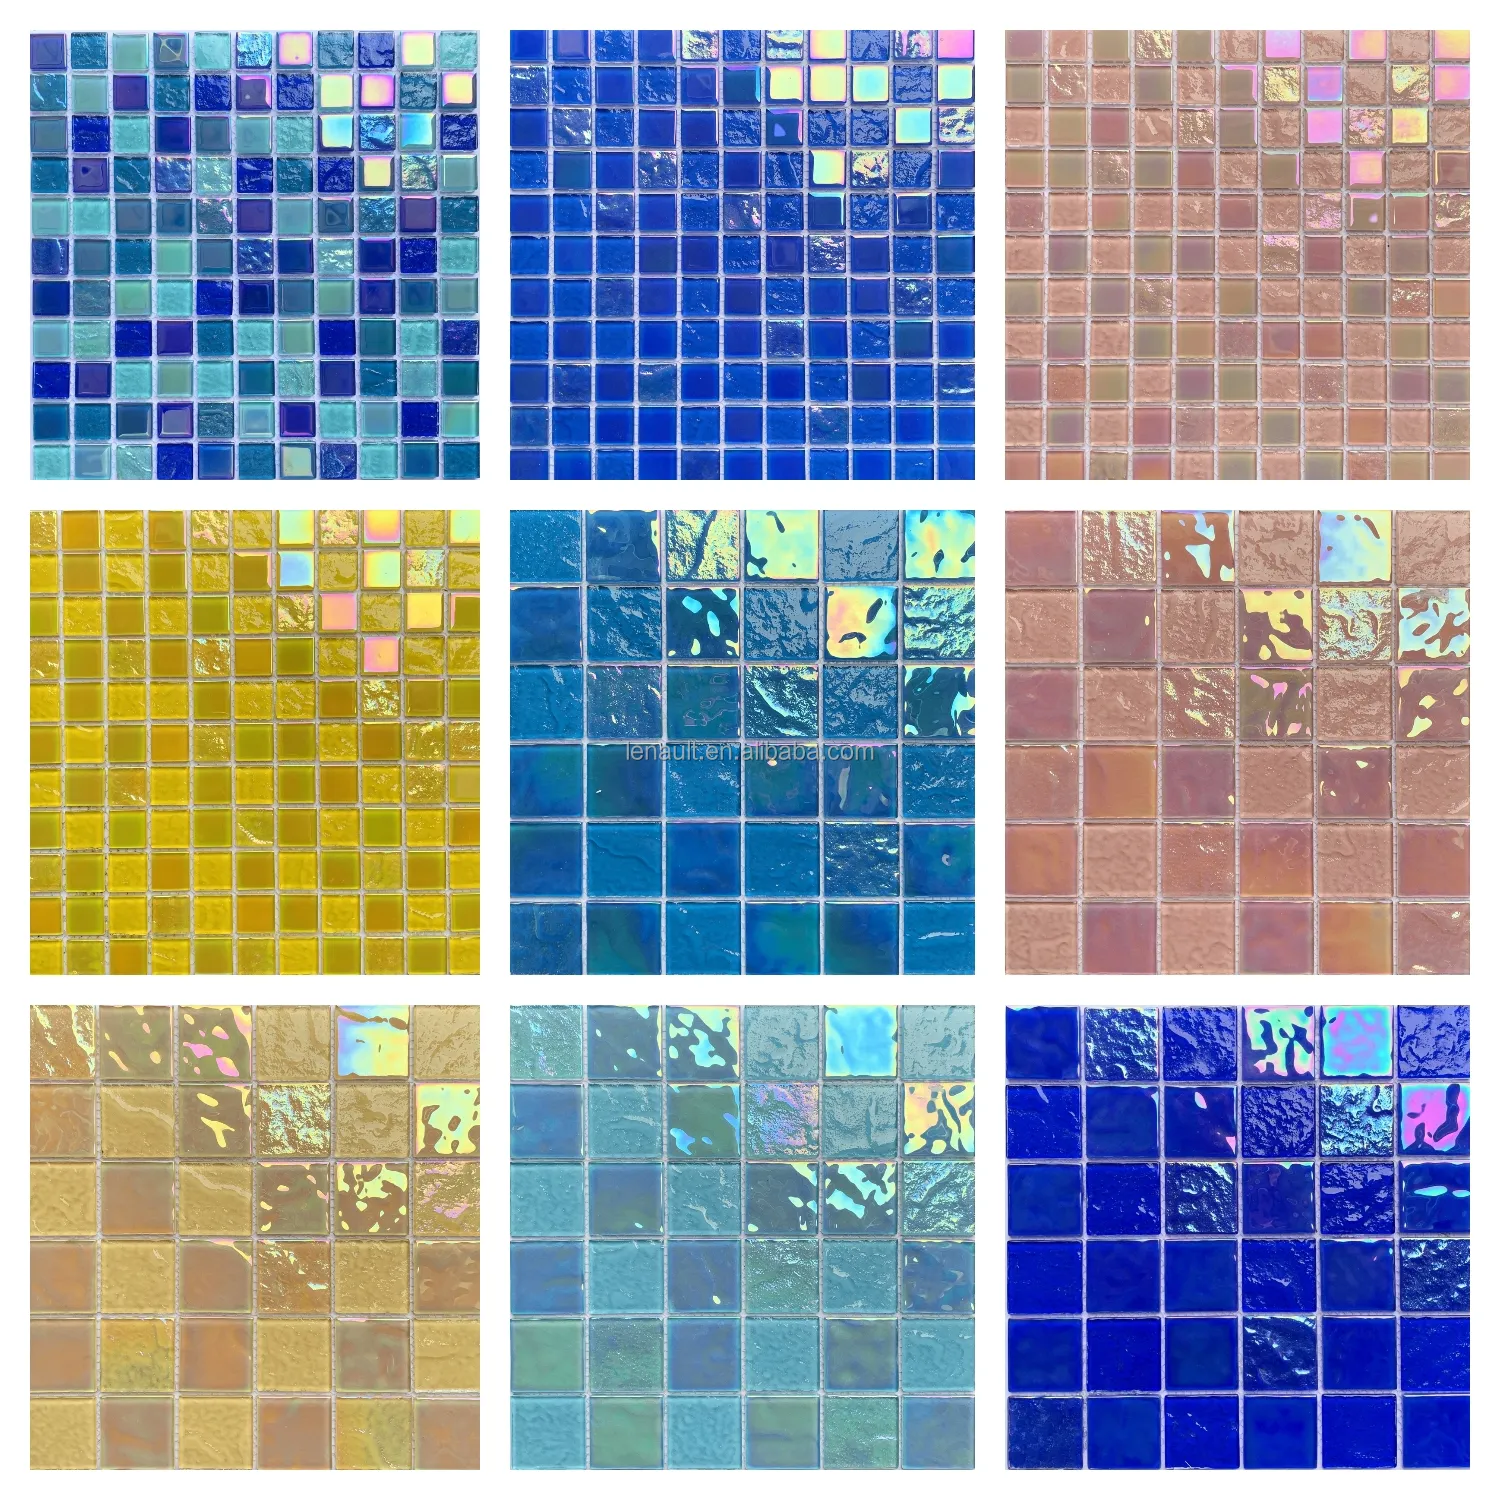 Piscina mágica cristal mosaico Fondo pared pescado piscina pared ladrillo baño té restaurante piscina azulejo